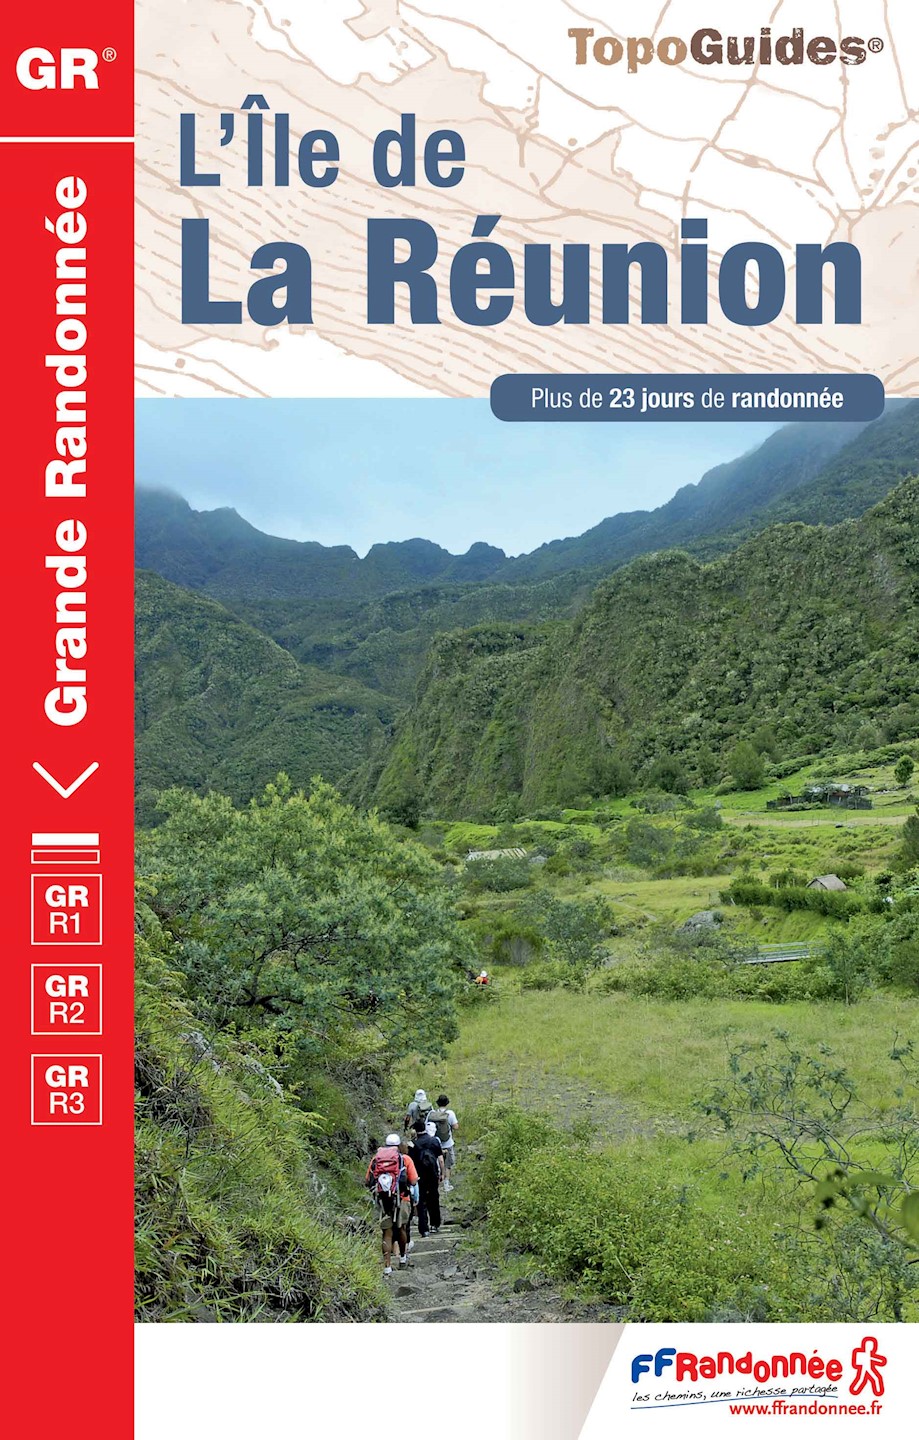 topoguide GR® R2 - Île de la Réunion